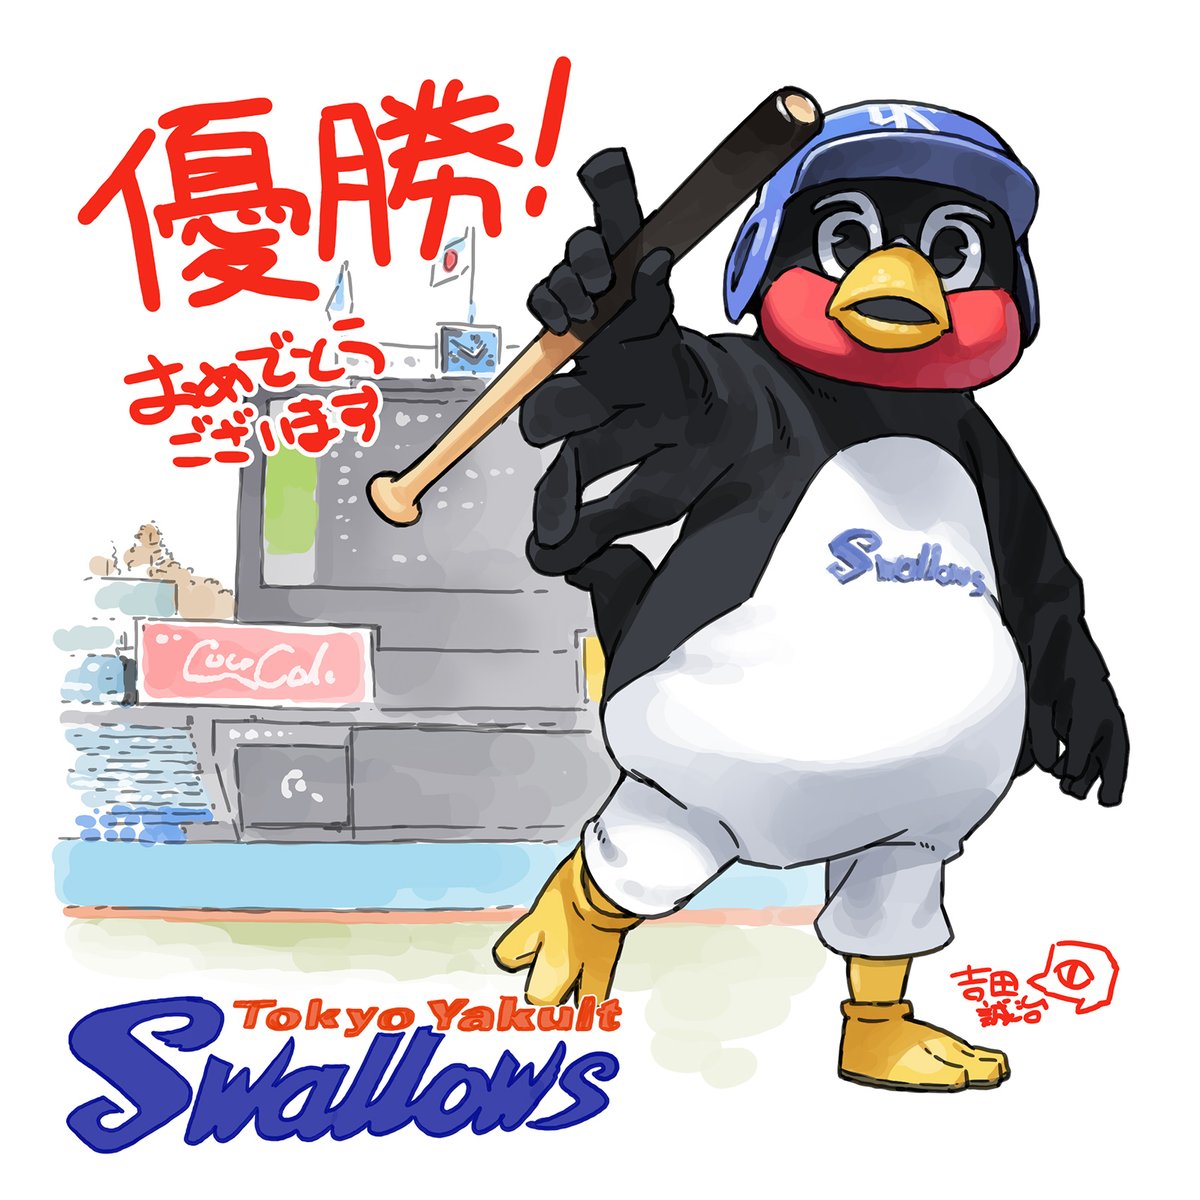 「スワローズ優勝おめでとうございます!リーグ2連覇! #swallows 」|吉田誠治のイラスト